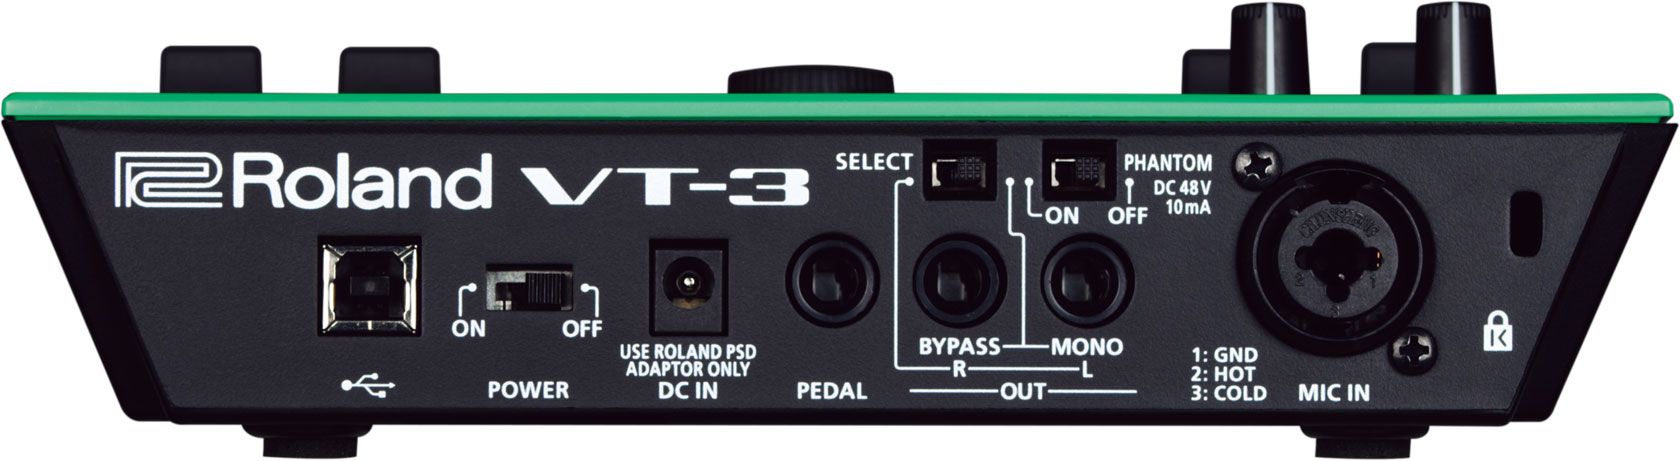 Roland VT-3 voice transformer